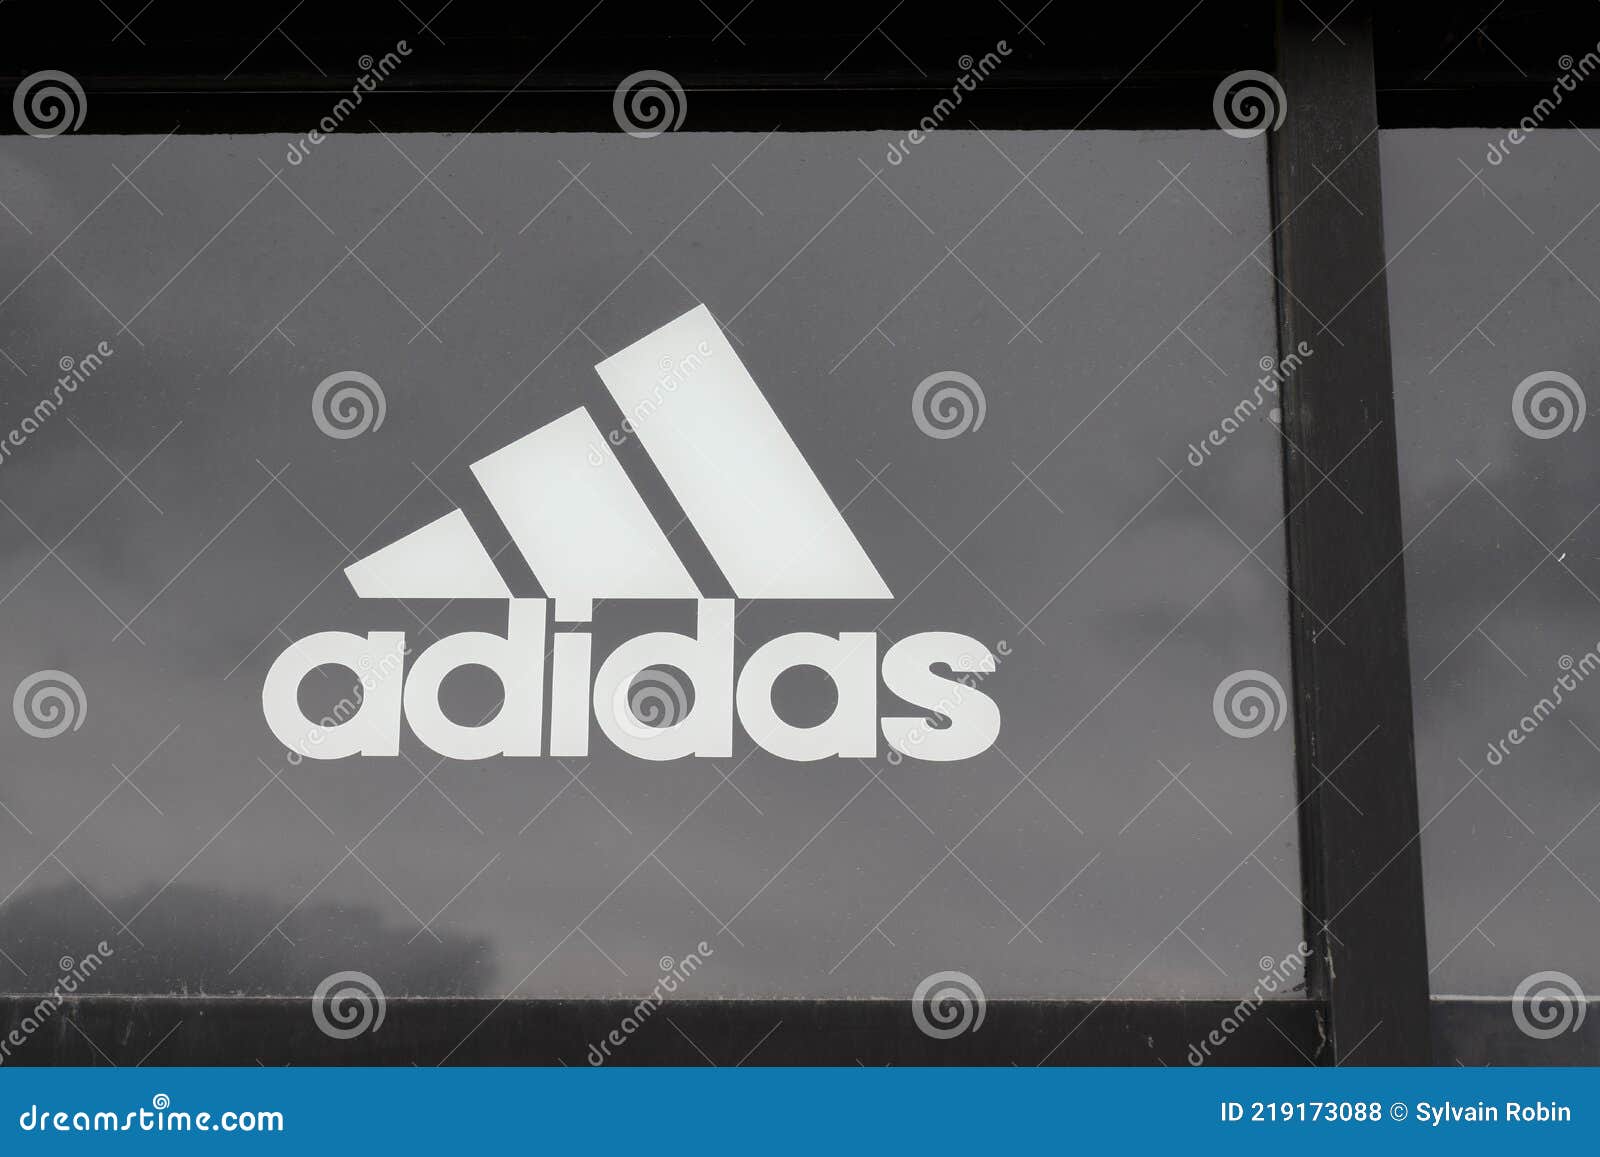 Adidas Logo Signo Y Texto Moda Sport Shop Manufacturas De Moda Deportiva Foto de archivo editorial - de publicidad, ropas: 219173088